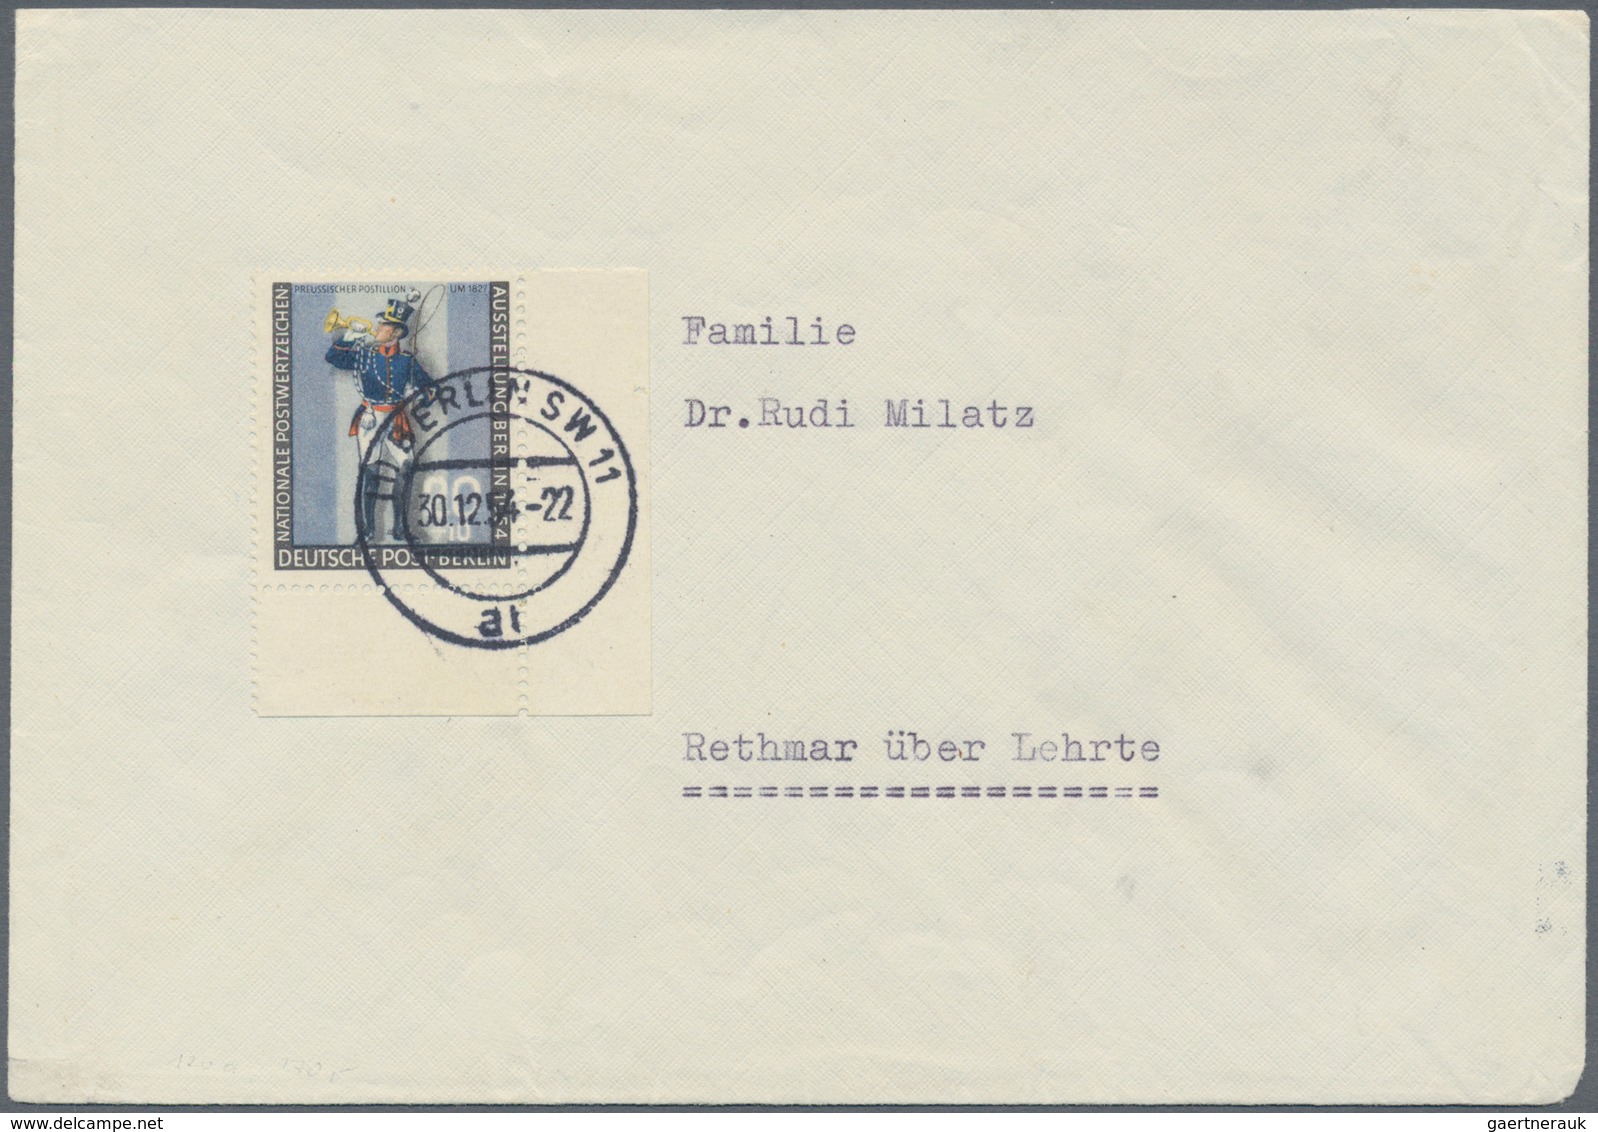 Berlin: 1945/1990, umfassende Sammlung von ca. 1.420 Briefen und Karten ab einigen Vorläufern bis hi